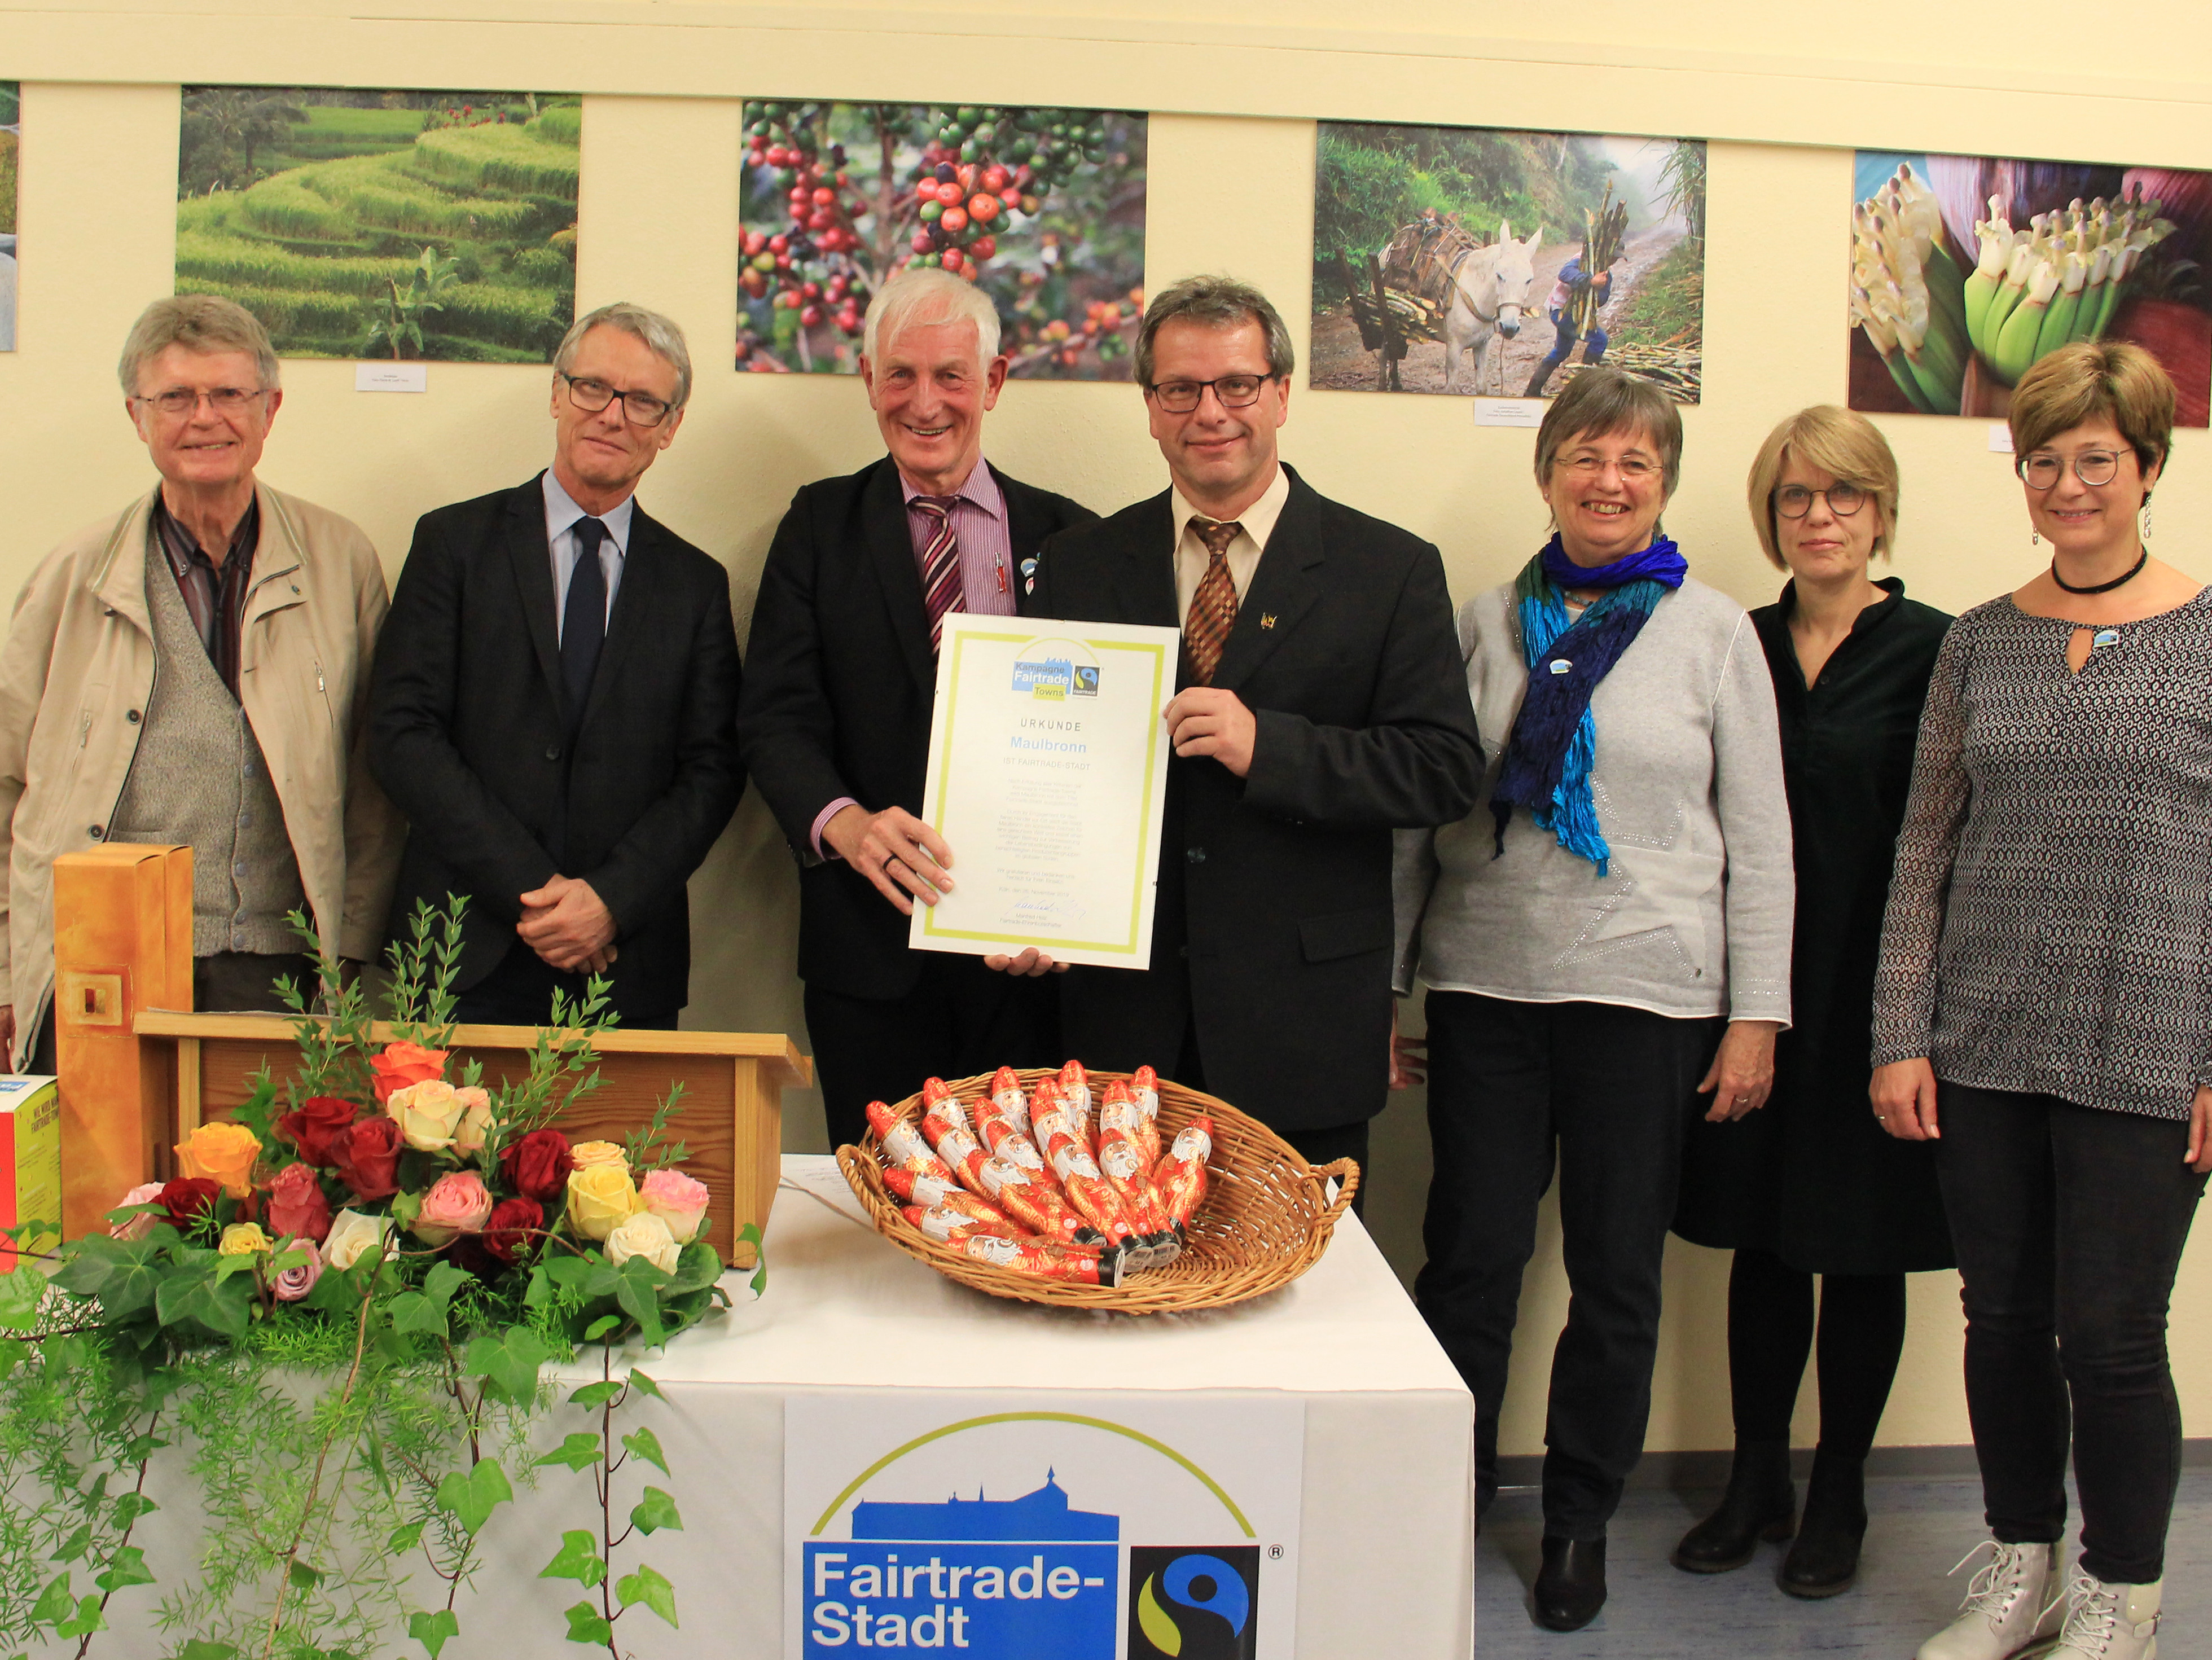 Steuerungsgruppe Fairtrade Town mit Bürgermeister Felchle und Manfred Holz, Ehrenbotschafter von Fairtrade Deutschland e.V.